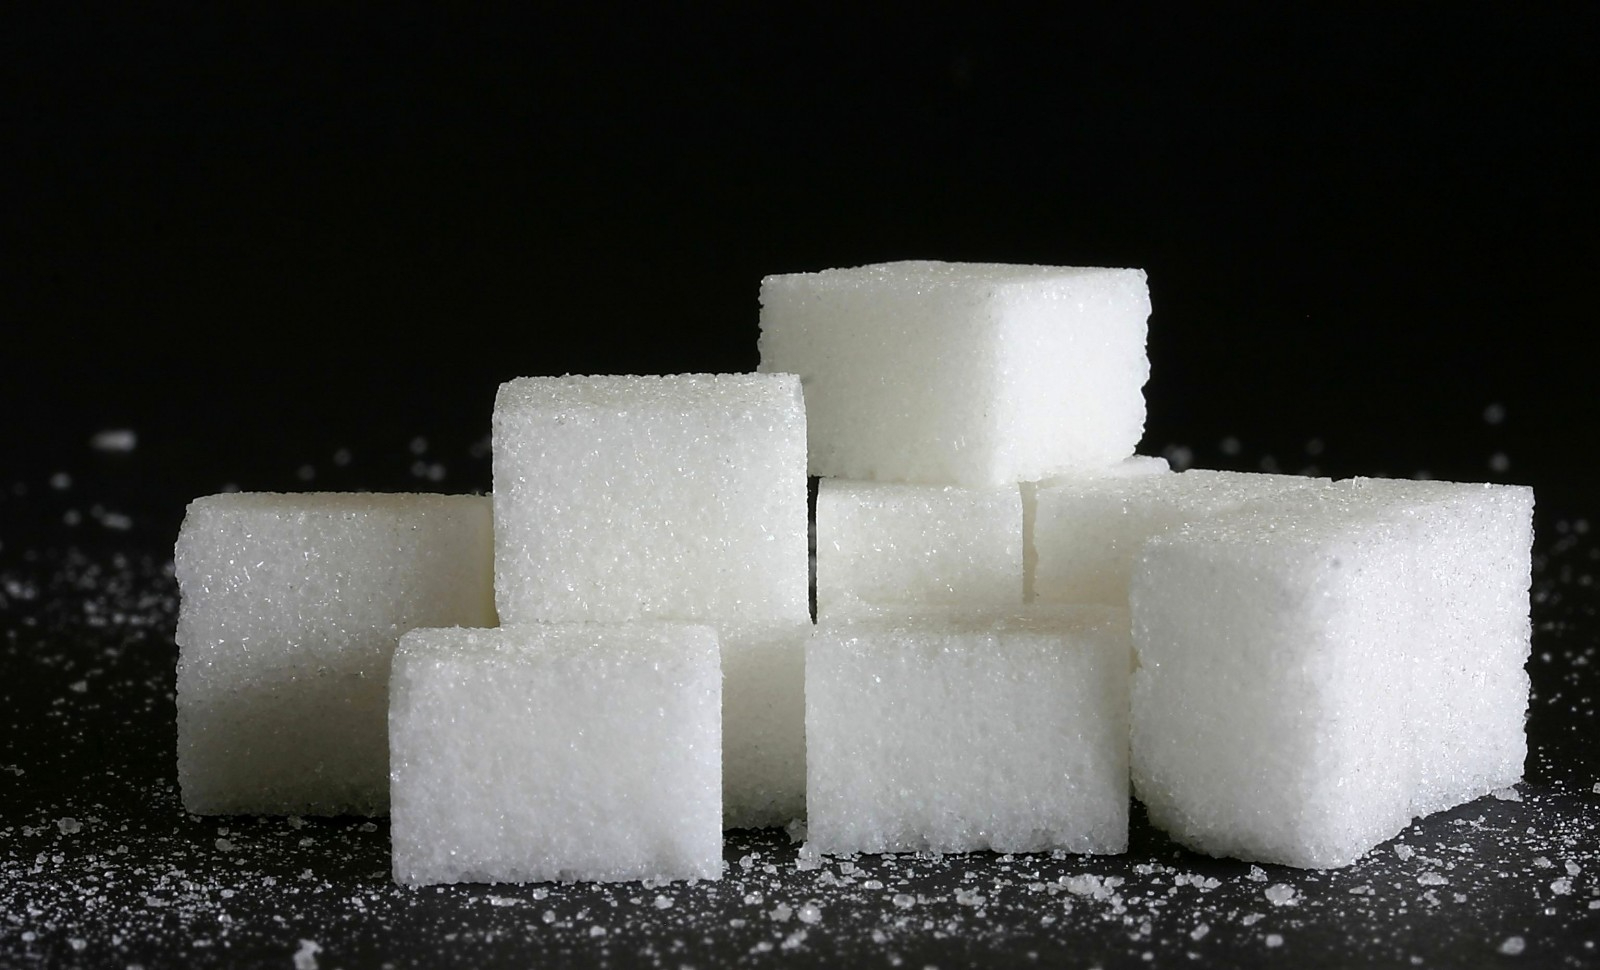 Alibiübung für Zucker aus Entwicklungsländern